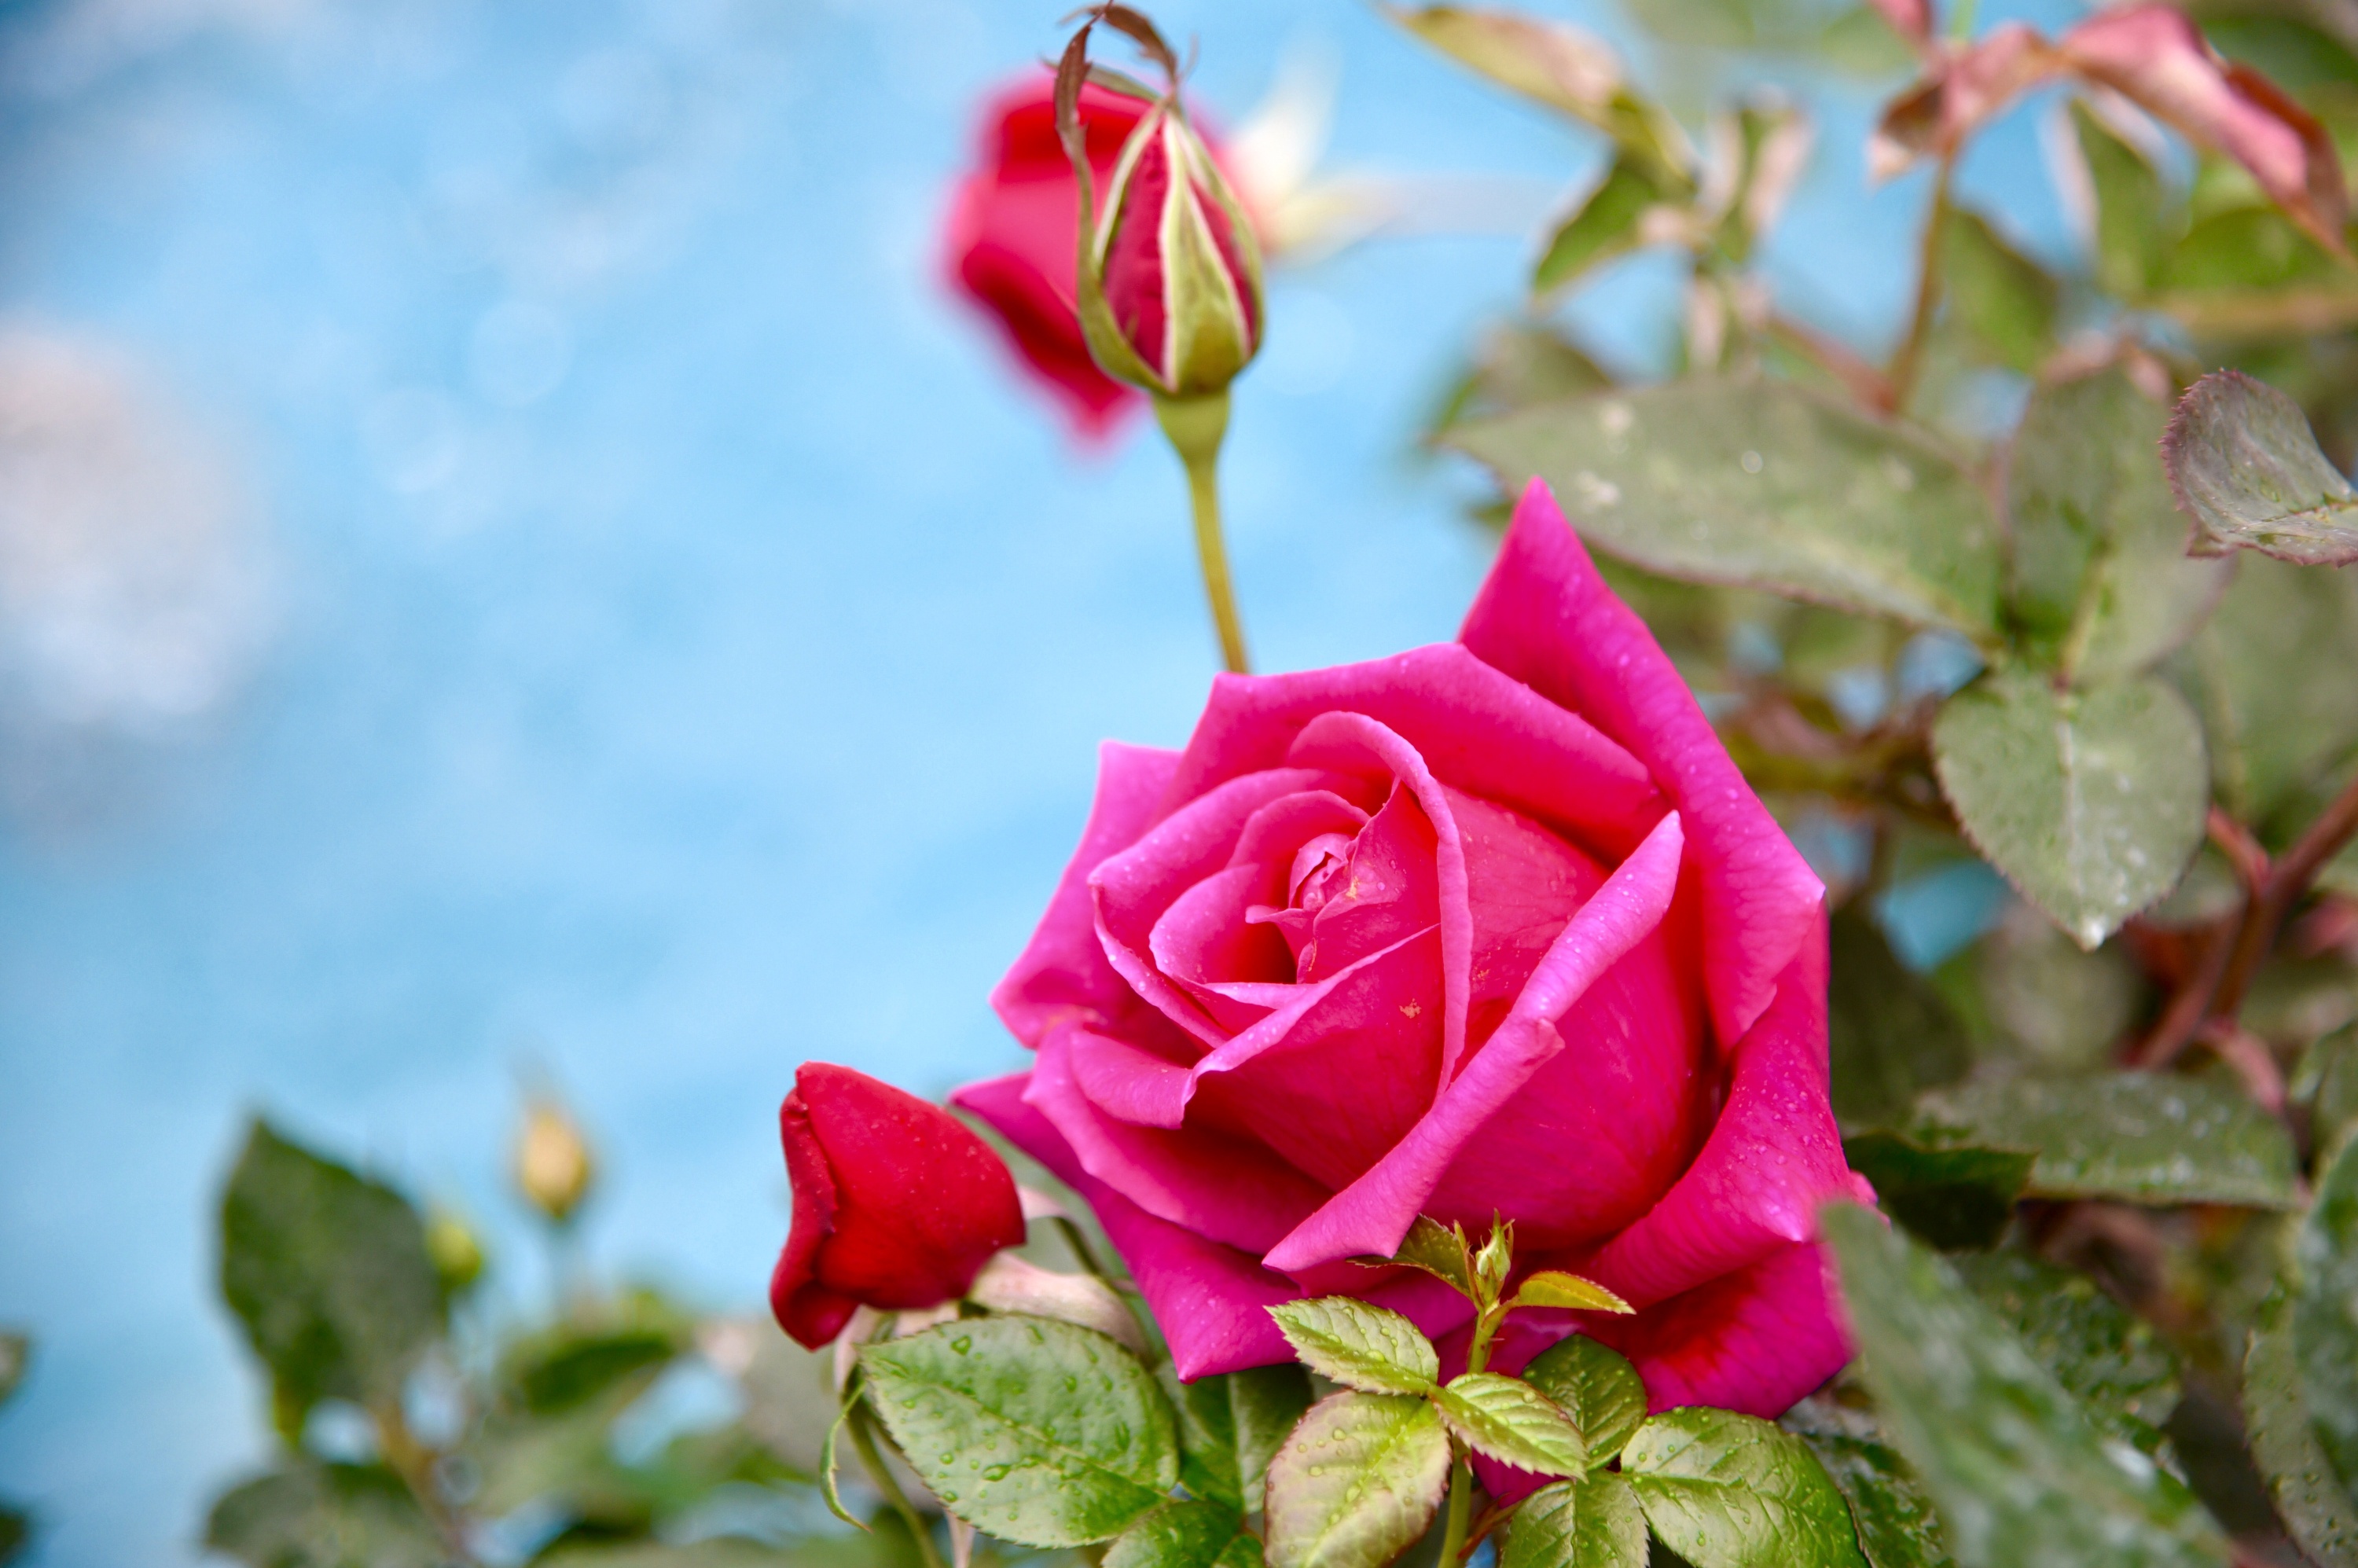 Скачать обои бесплатно Природа, Цветок, Роза, Земля/природа, Розовый Цветок, Флауэрсы картинка на рабочий стол ПК